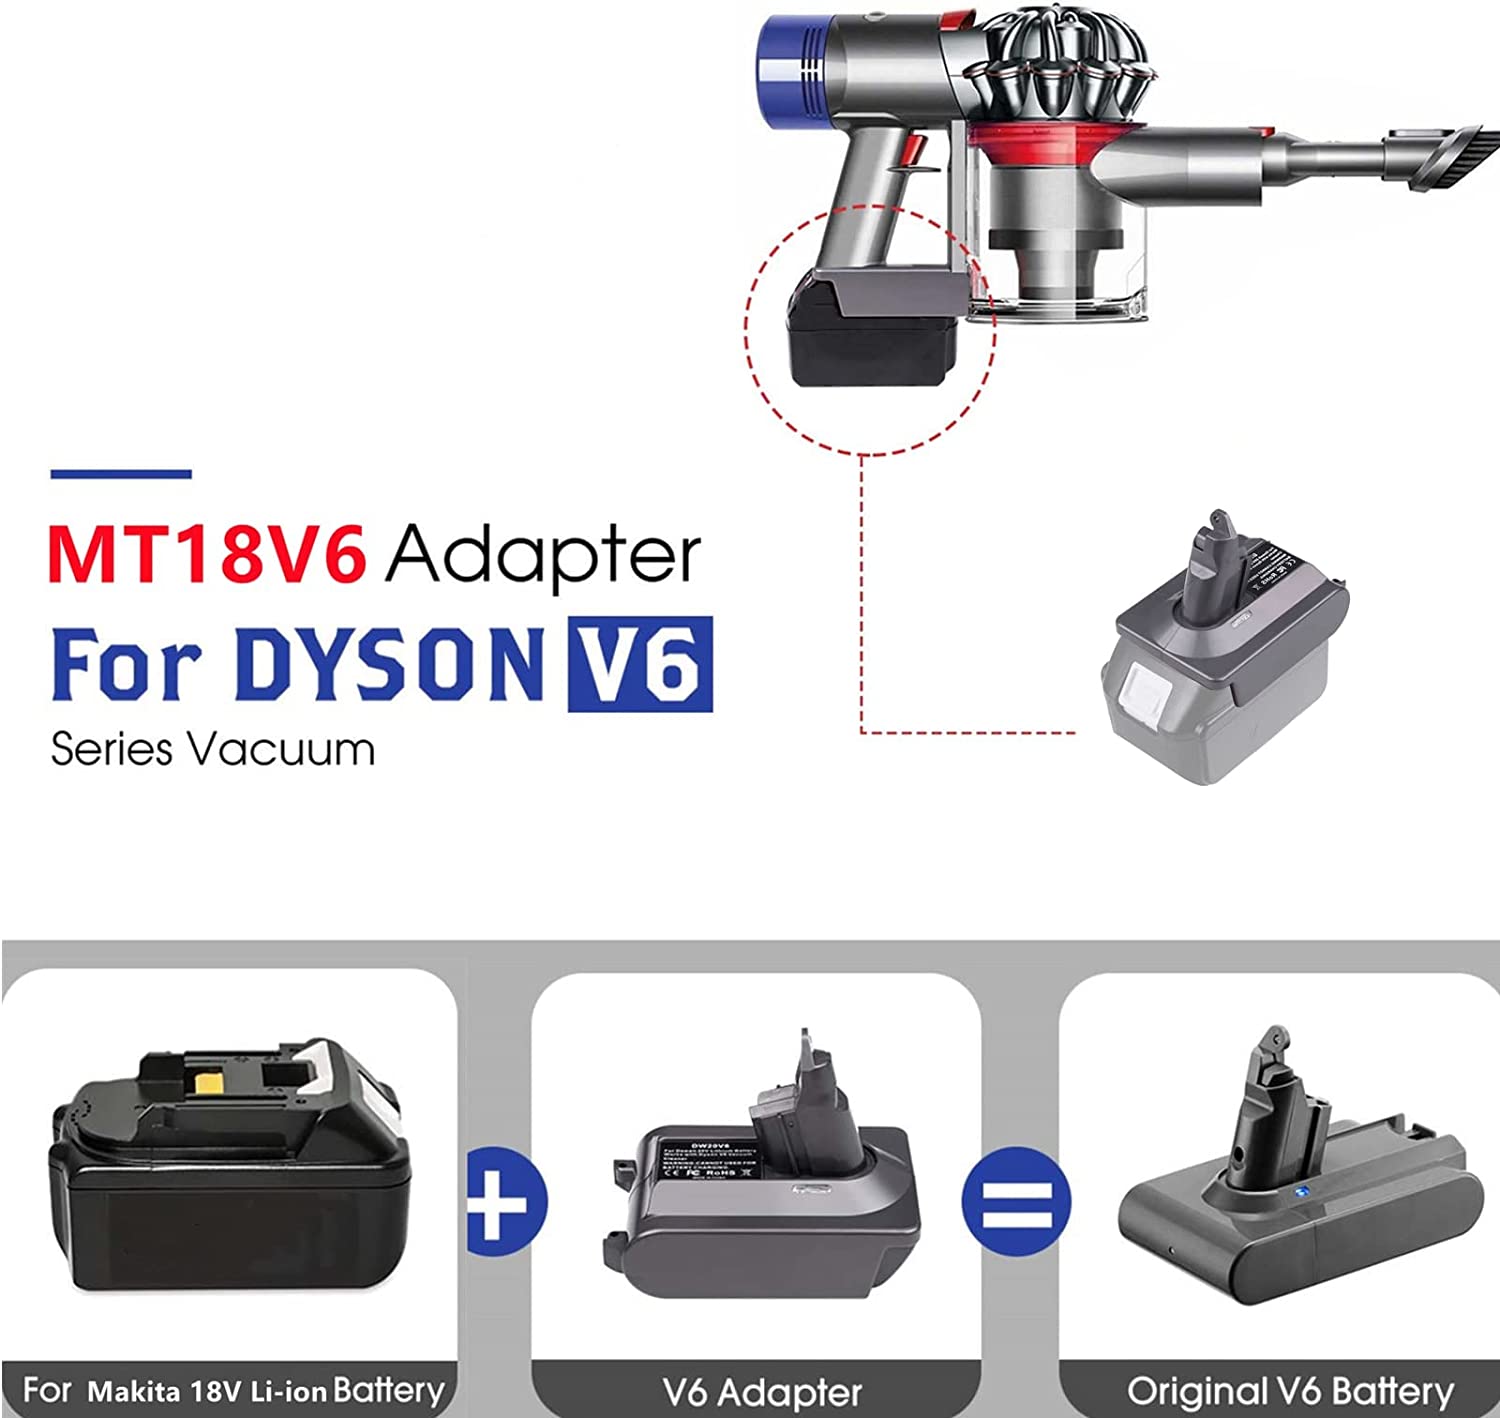 Amashanyarazi ya Dyson V6 Adapter ya Makita 18V Bateri ya Litiyumu Yahinduwe Bateri ya Dyson V6